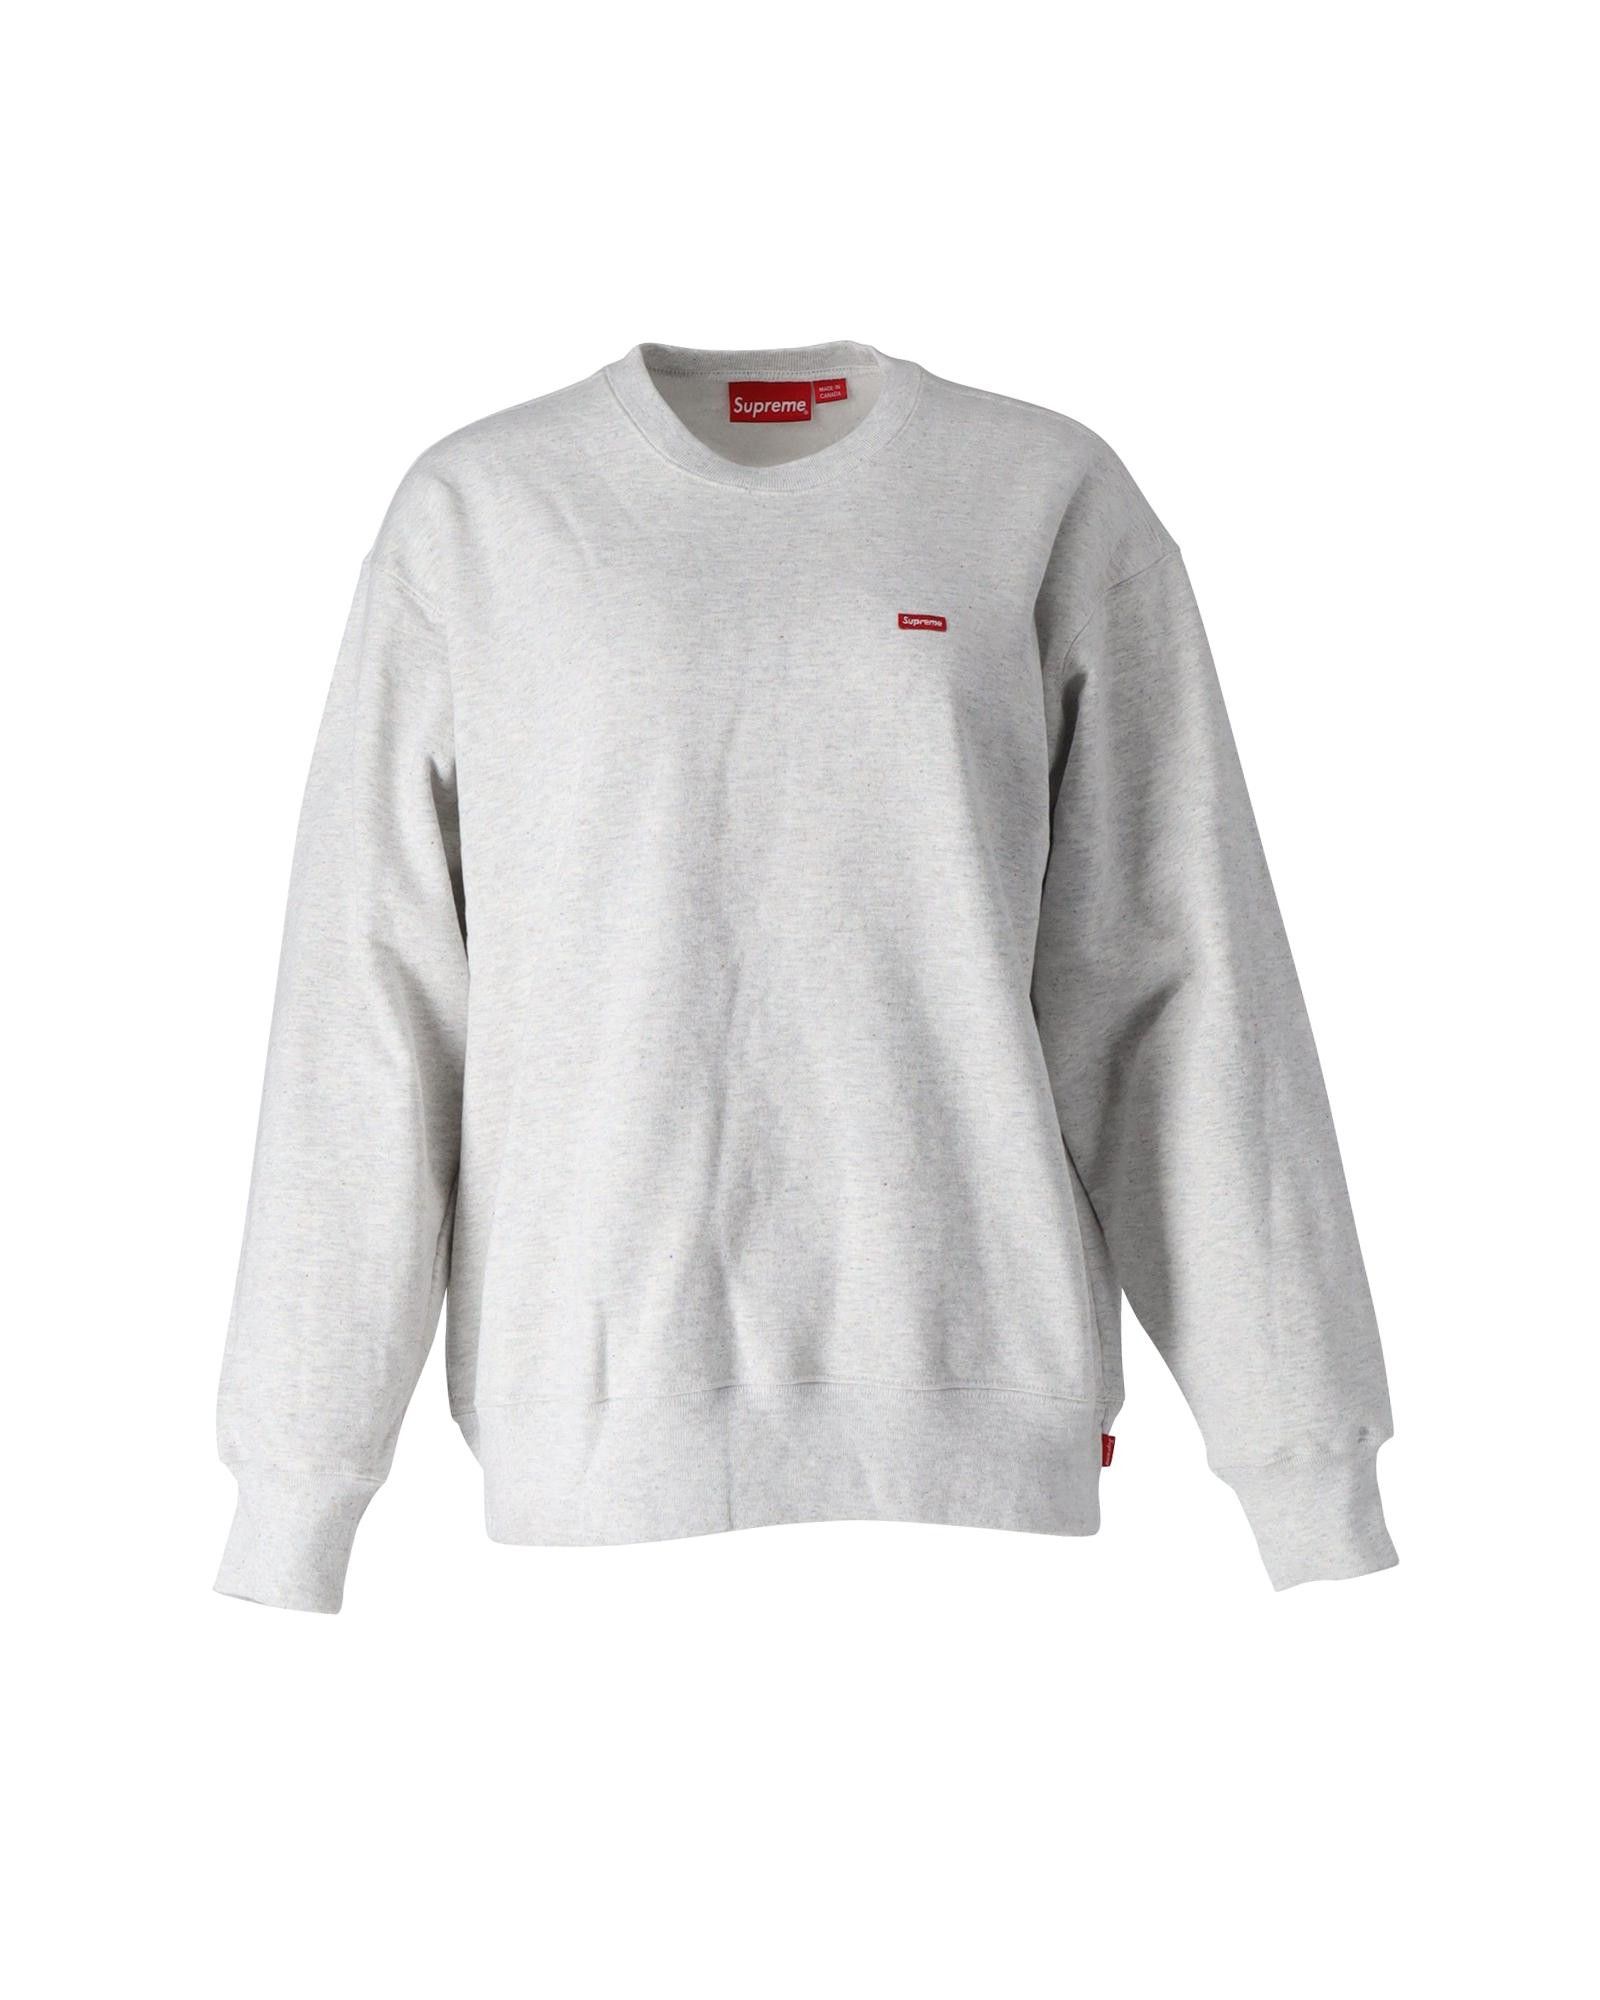 Supreme Small Box Logo Crewneck Sweater in Ash Grey Cotton | Grailed